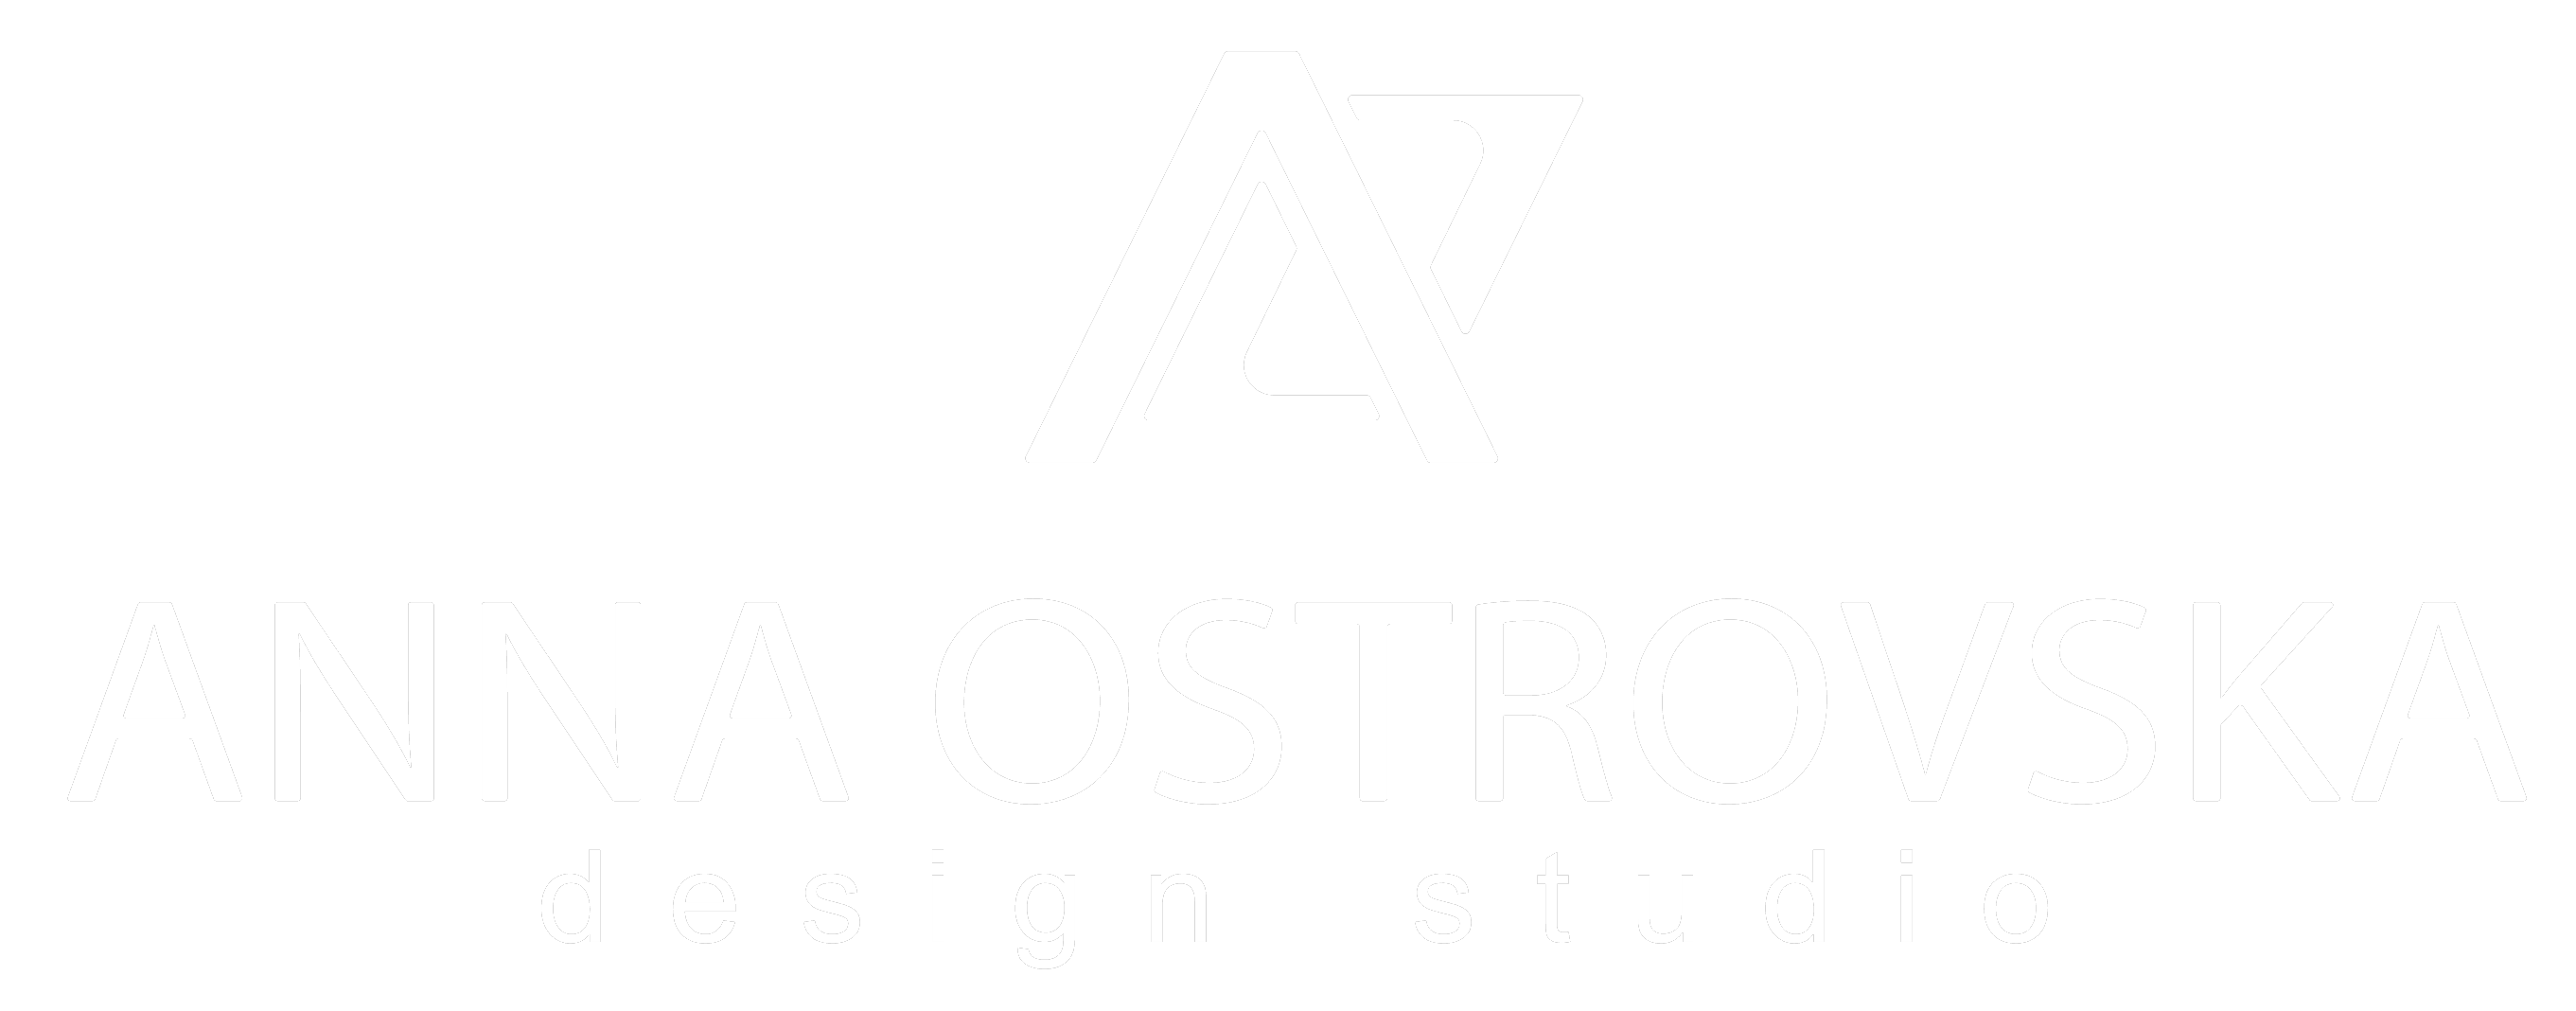 Design studio ANNA OSTROVSKA